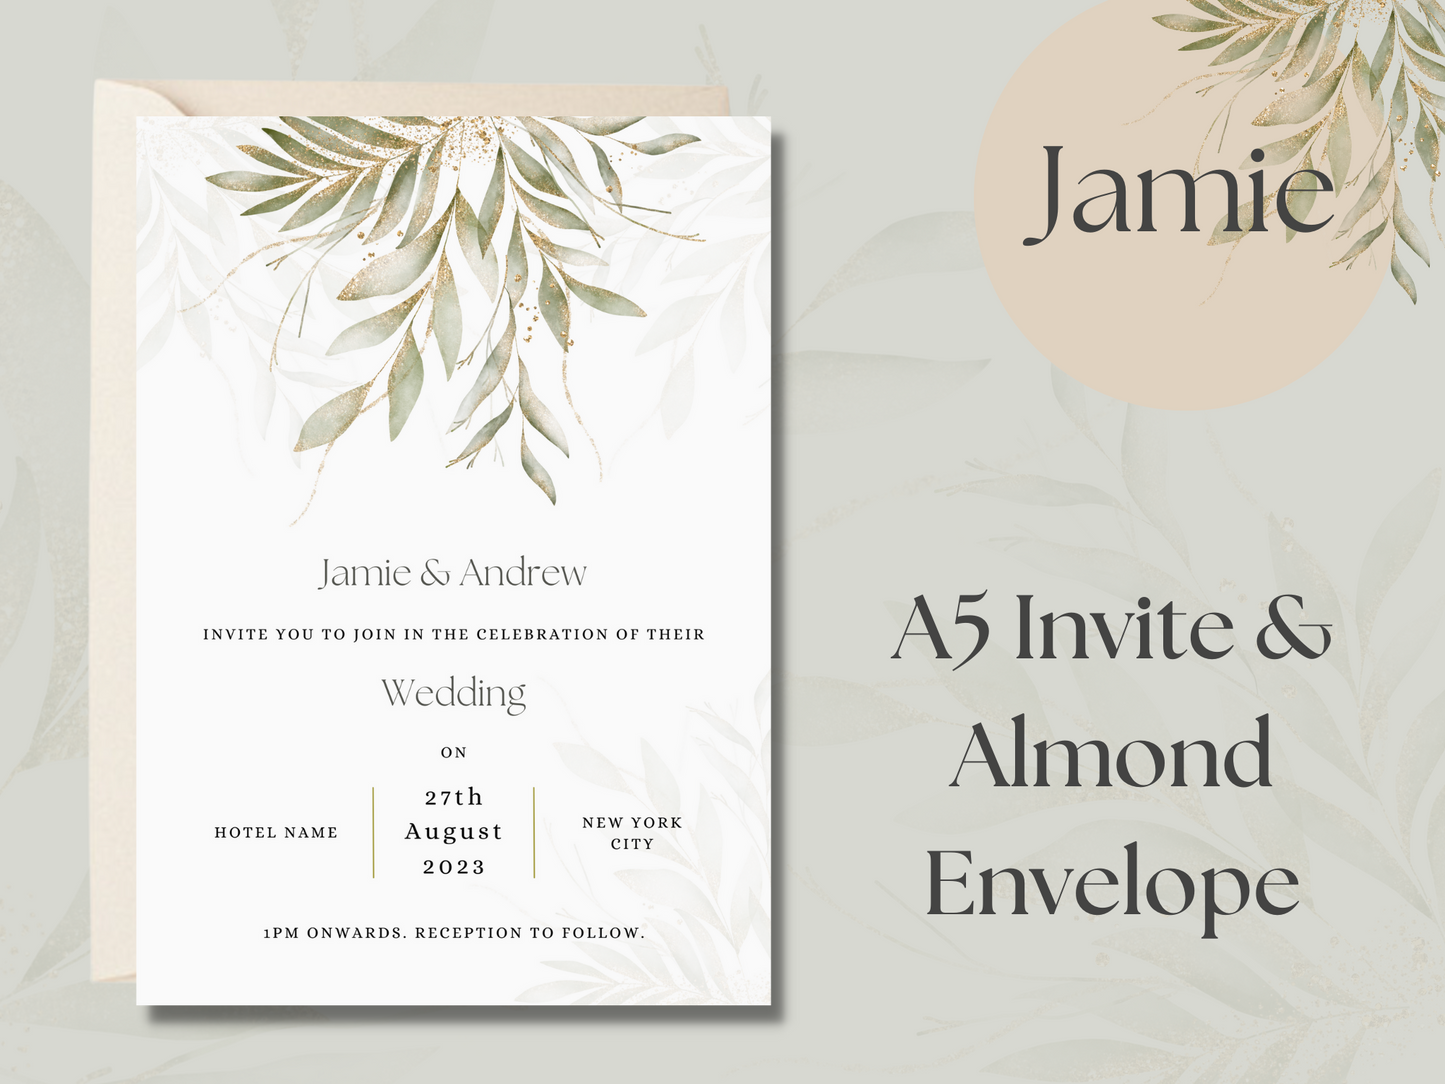 Jamie Botanical Wedding Invitation & Envelope